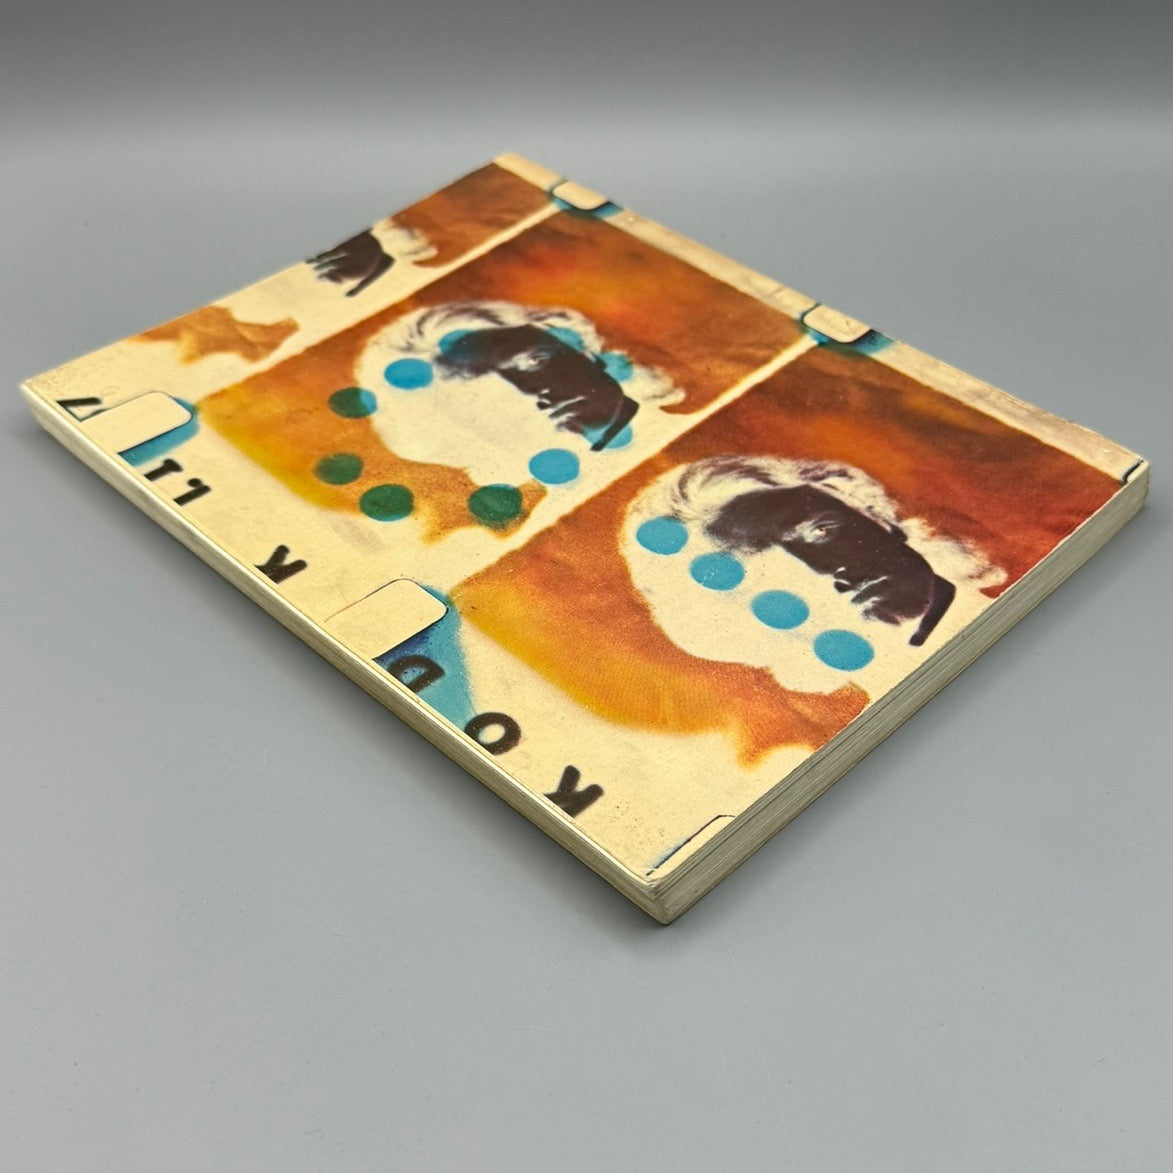 Andy Warhol and Gerard Malanga Screen Tests/A Diary, 1967 Kulchur Press 1st Ed